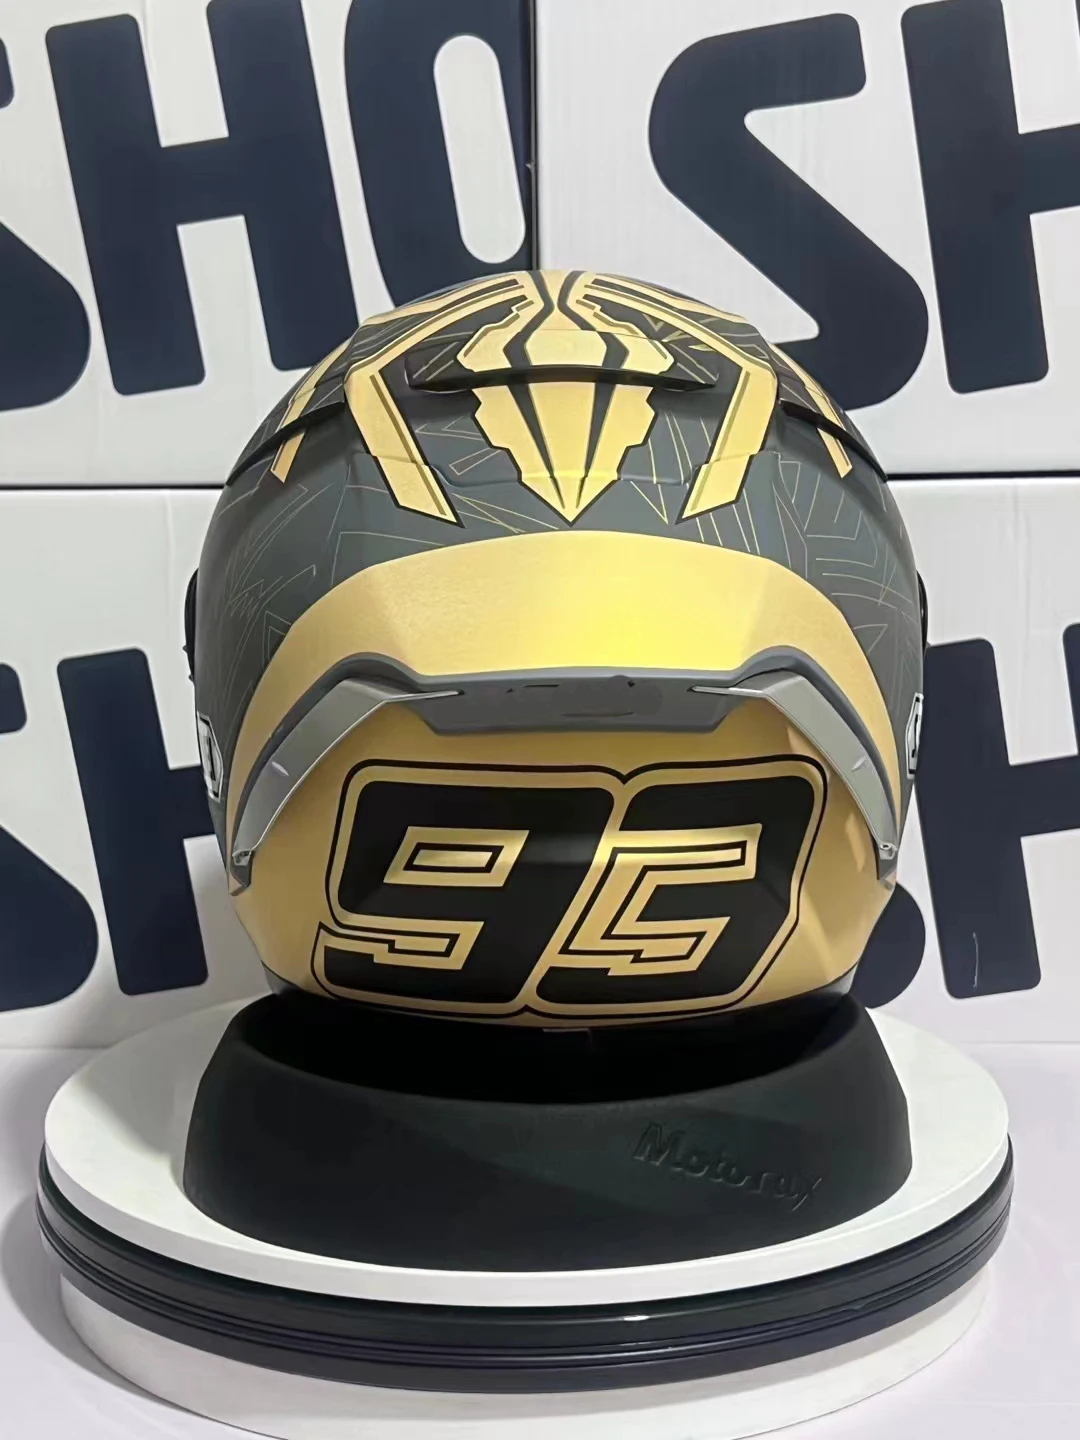 

Мотоциклетный шлем на все лицо, X-14 x14 Marquez gold, шлем для езды на мотоцикле, гоночный шлем для мотоцикла